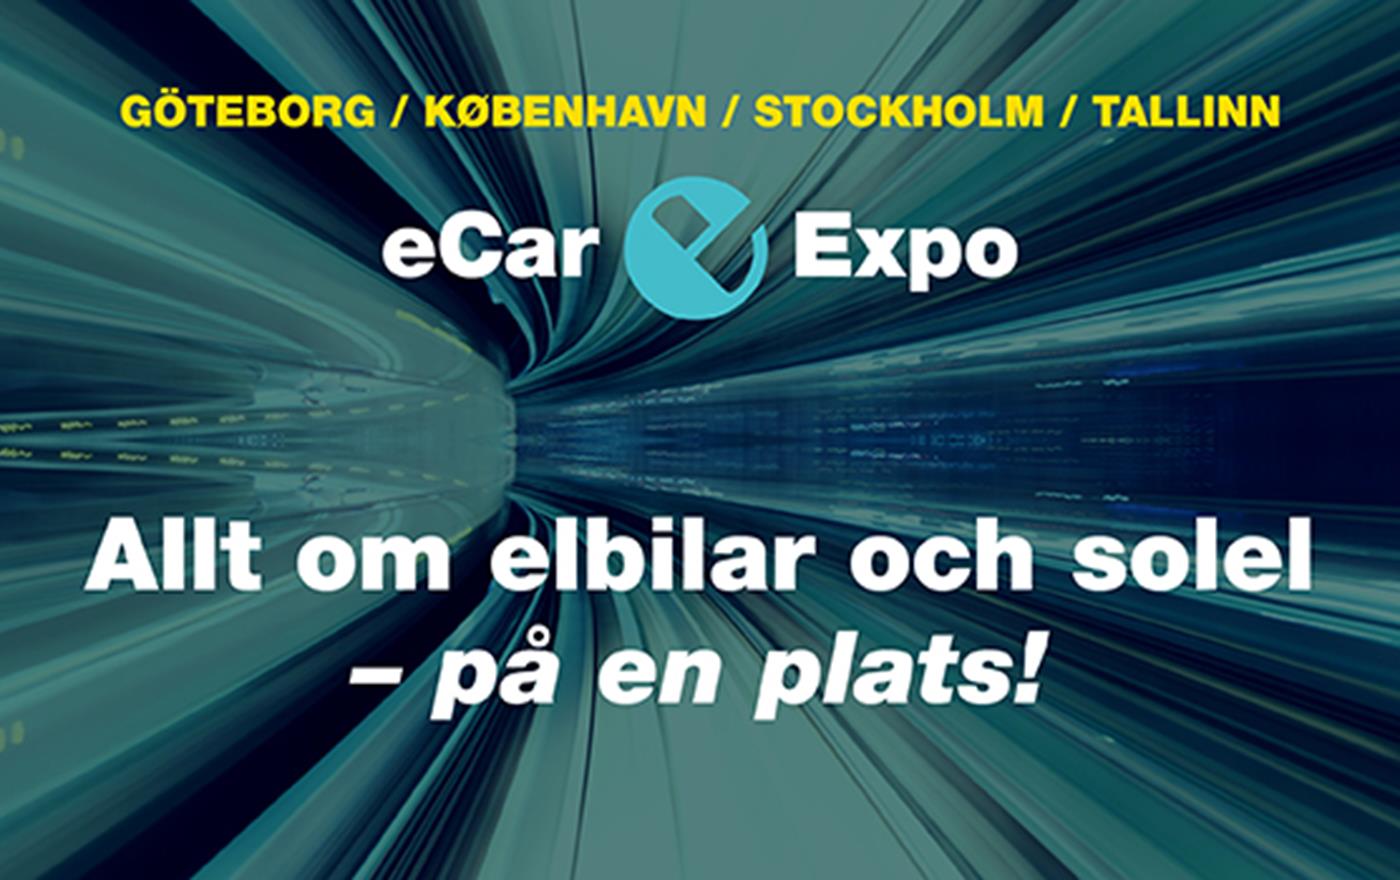 Meet us at E-car expo